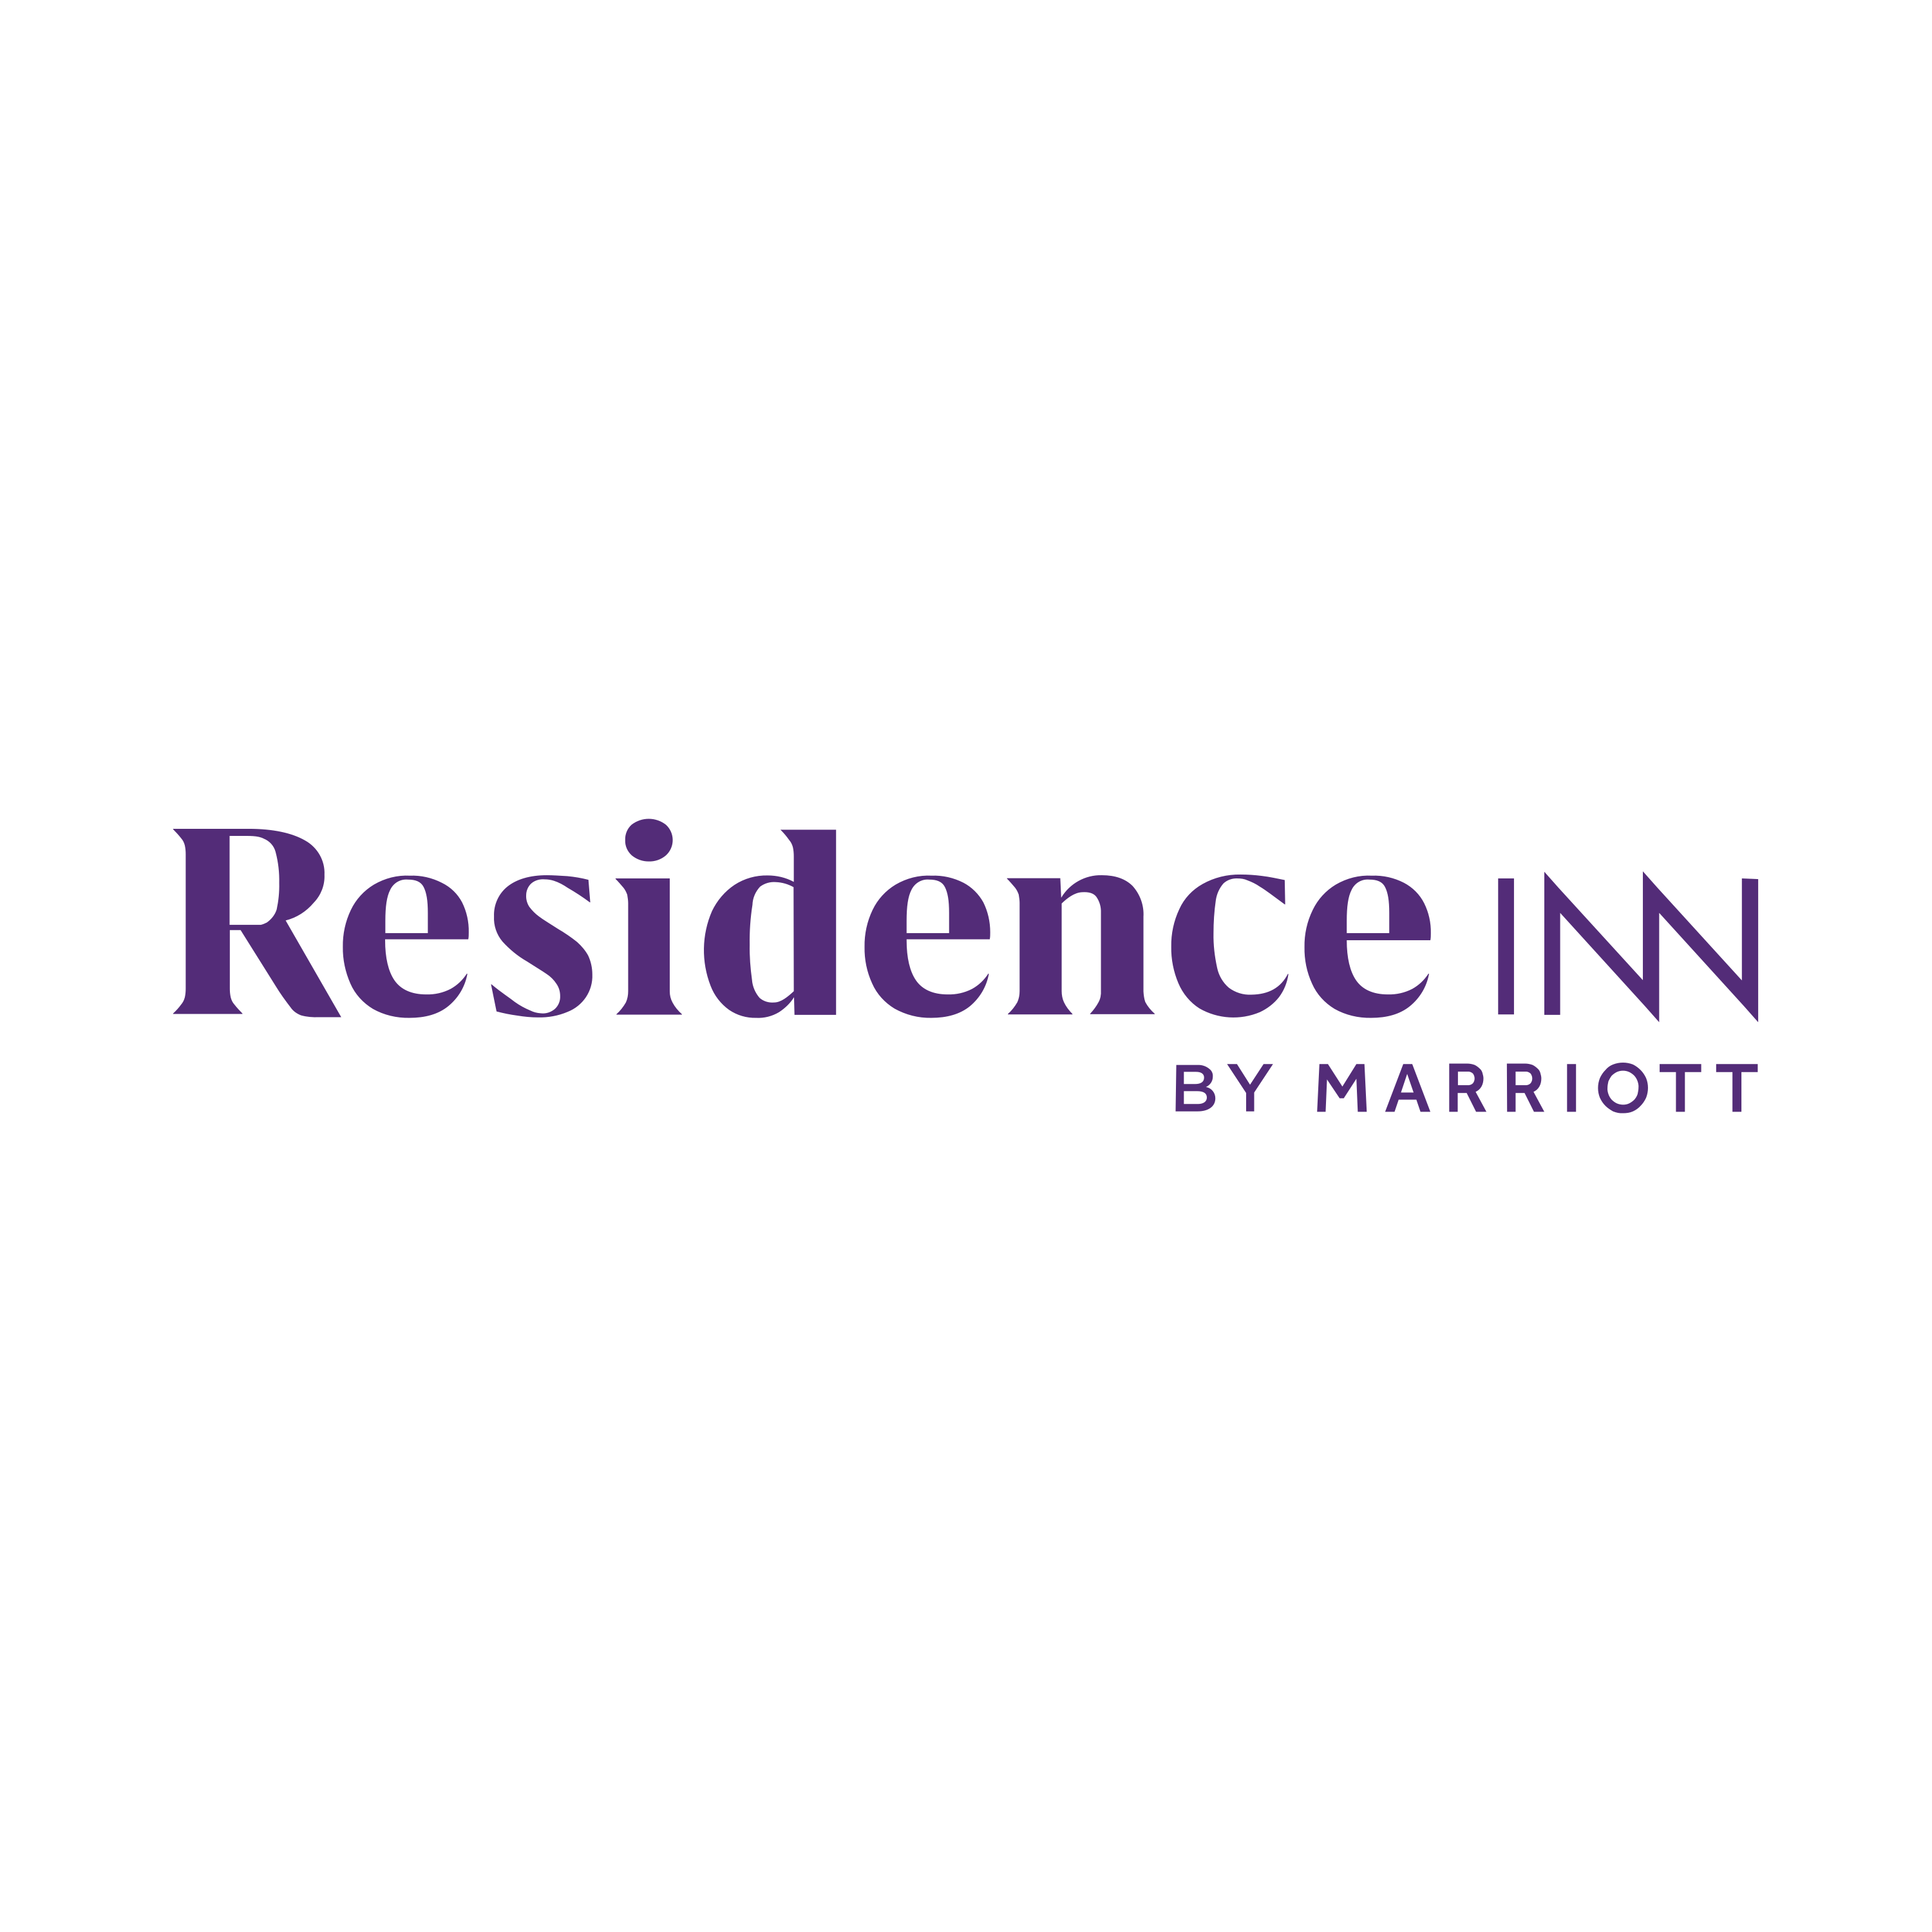 Residence Inn Logo Transparent Picture